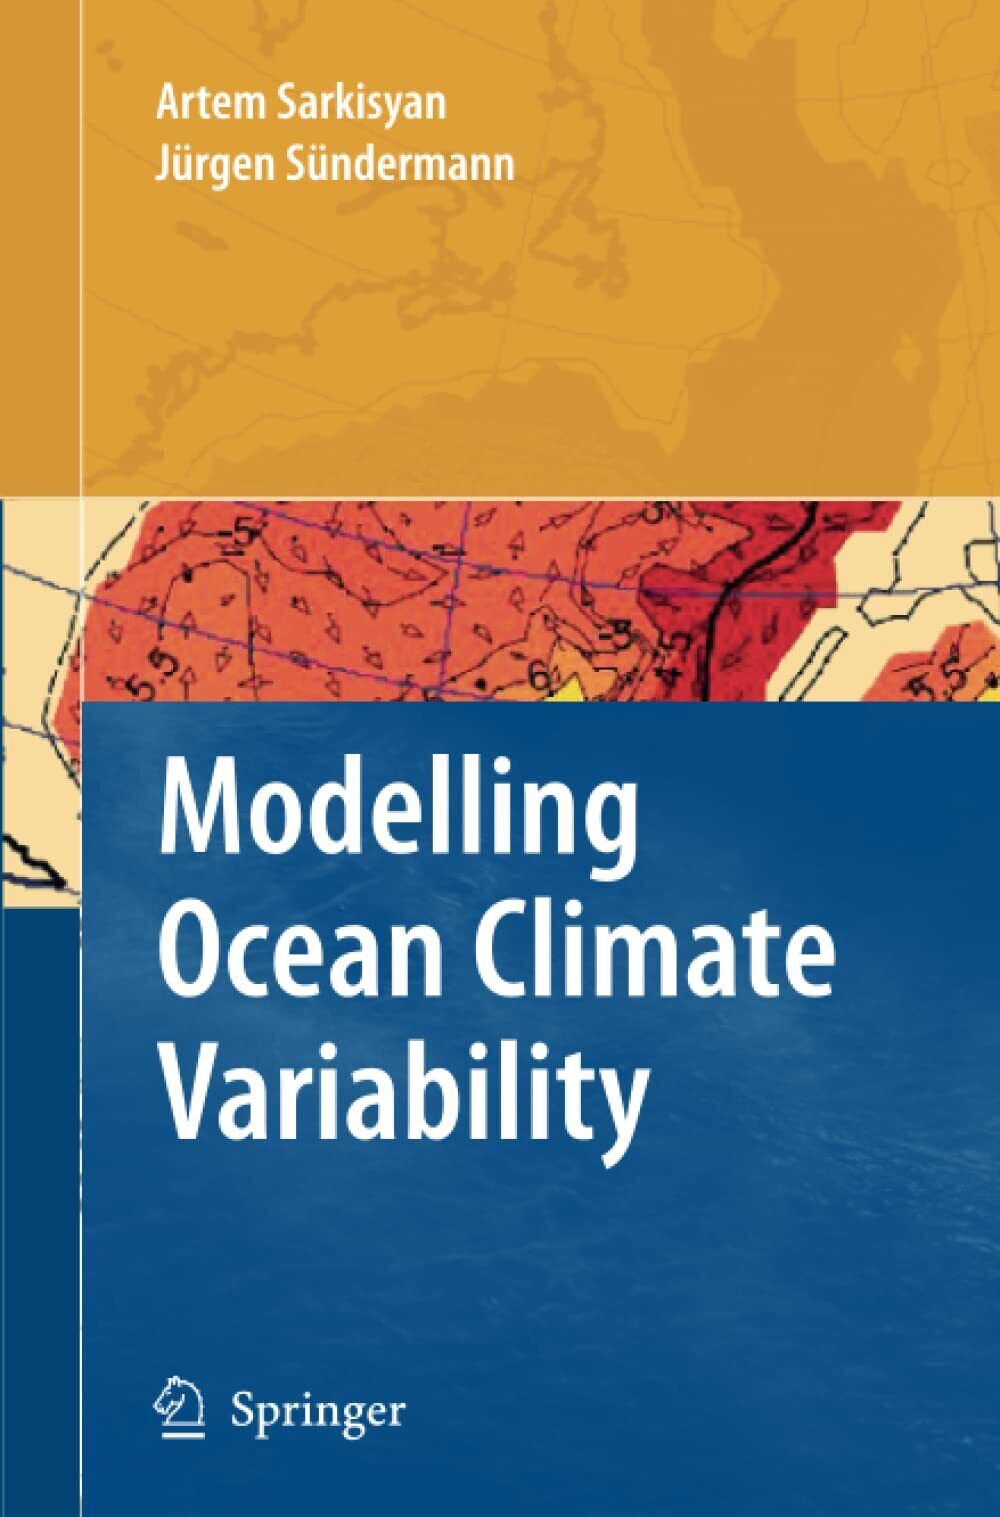 Modelling Ocean Climate Variability - Artem S. Sarkisyan - Springer, 2010